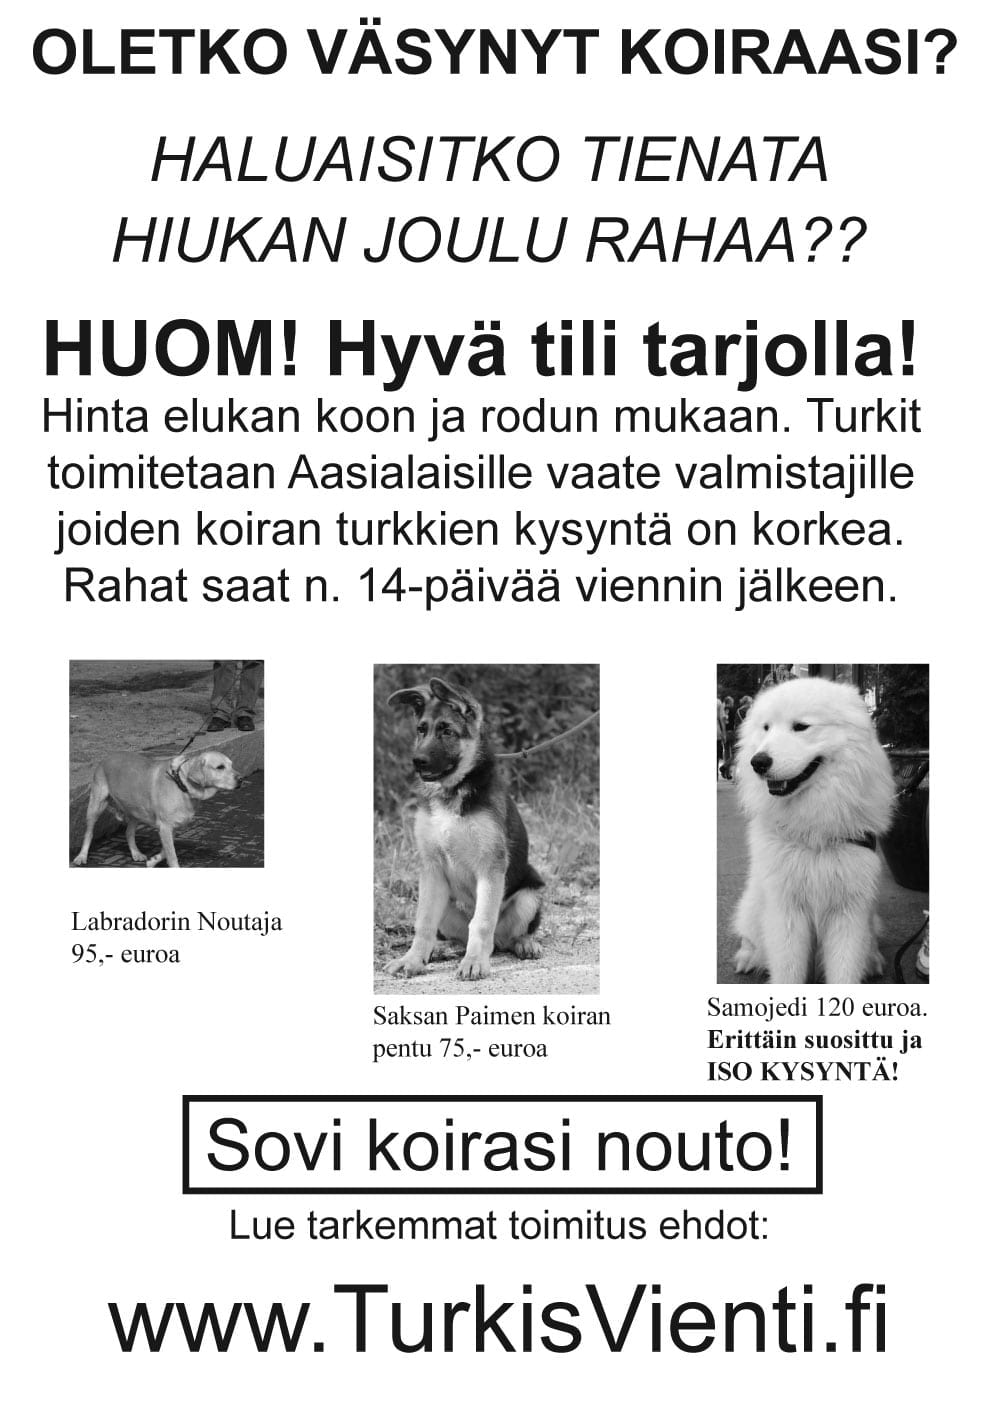 Turkiskampanja suututti koiranomistajia syksyllä 2005